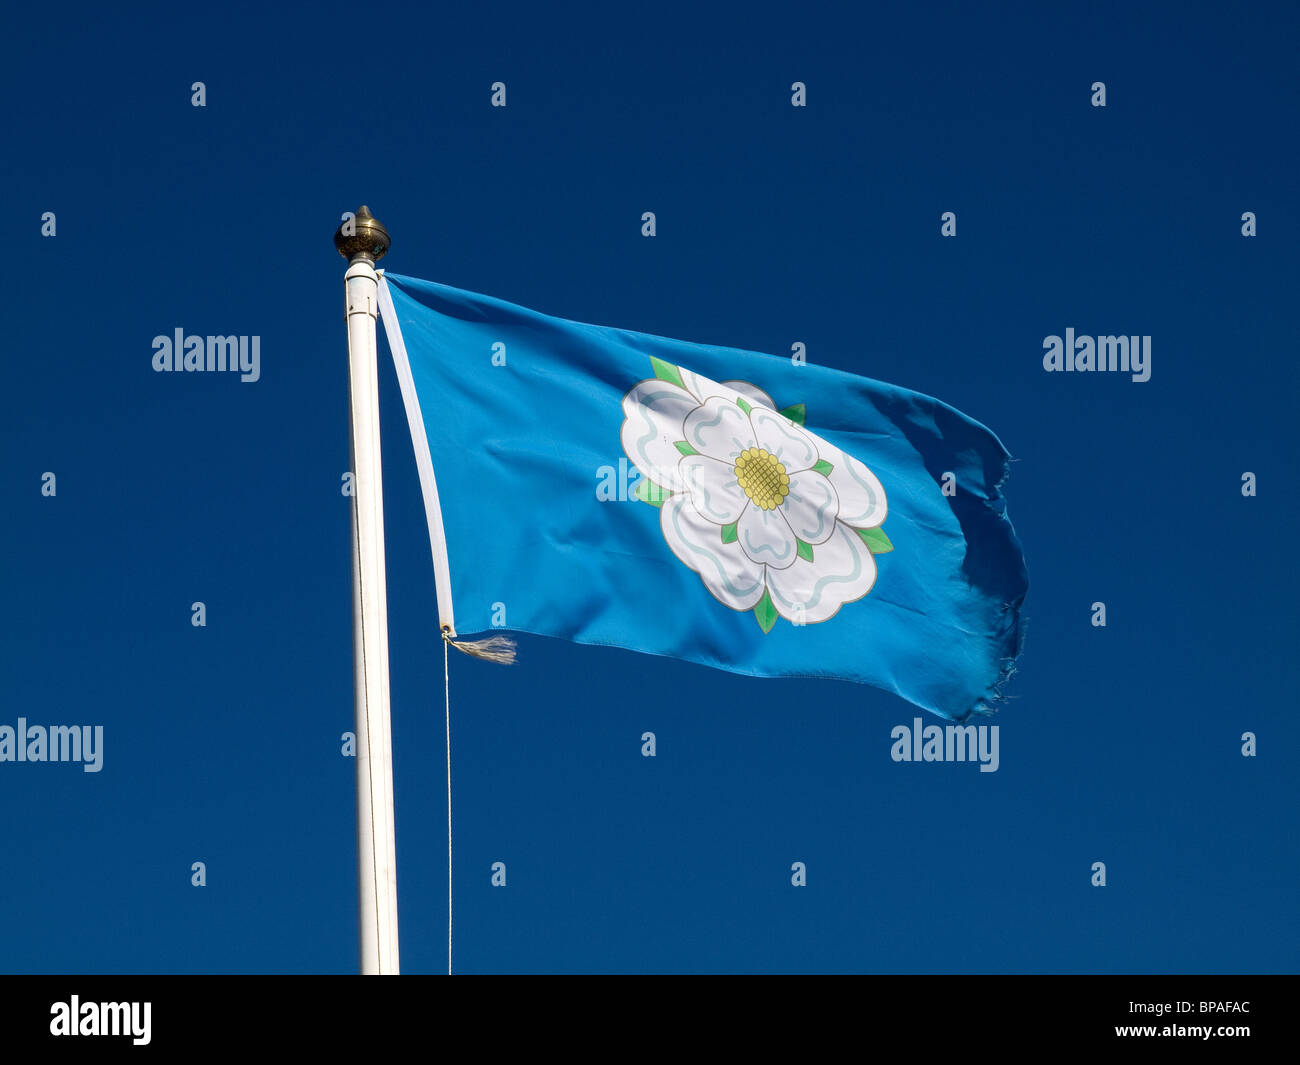 Gazzetta Yorkshire County bandiera con una rosa bianca su fondo blu Foto Stock